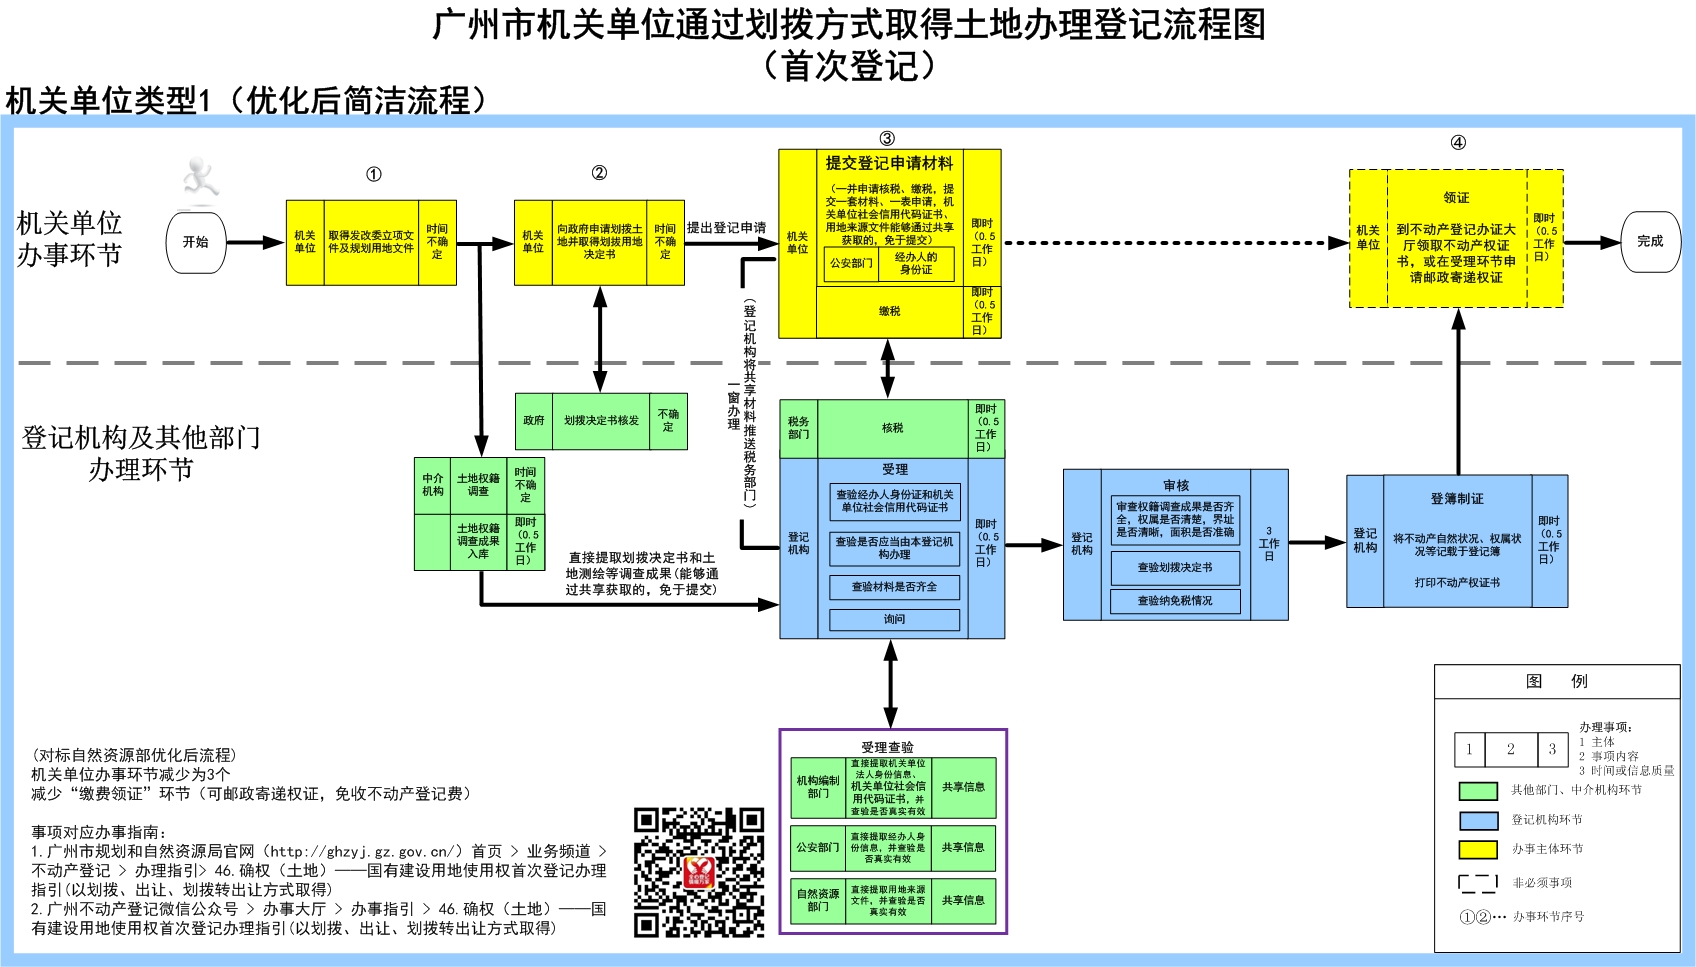 1广州市机关单位通过划拨方式取得土地办理登记流程（首次登记）.jpg